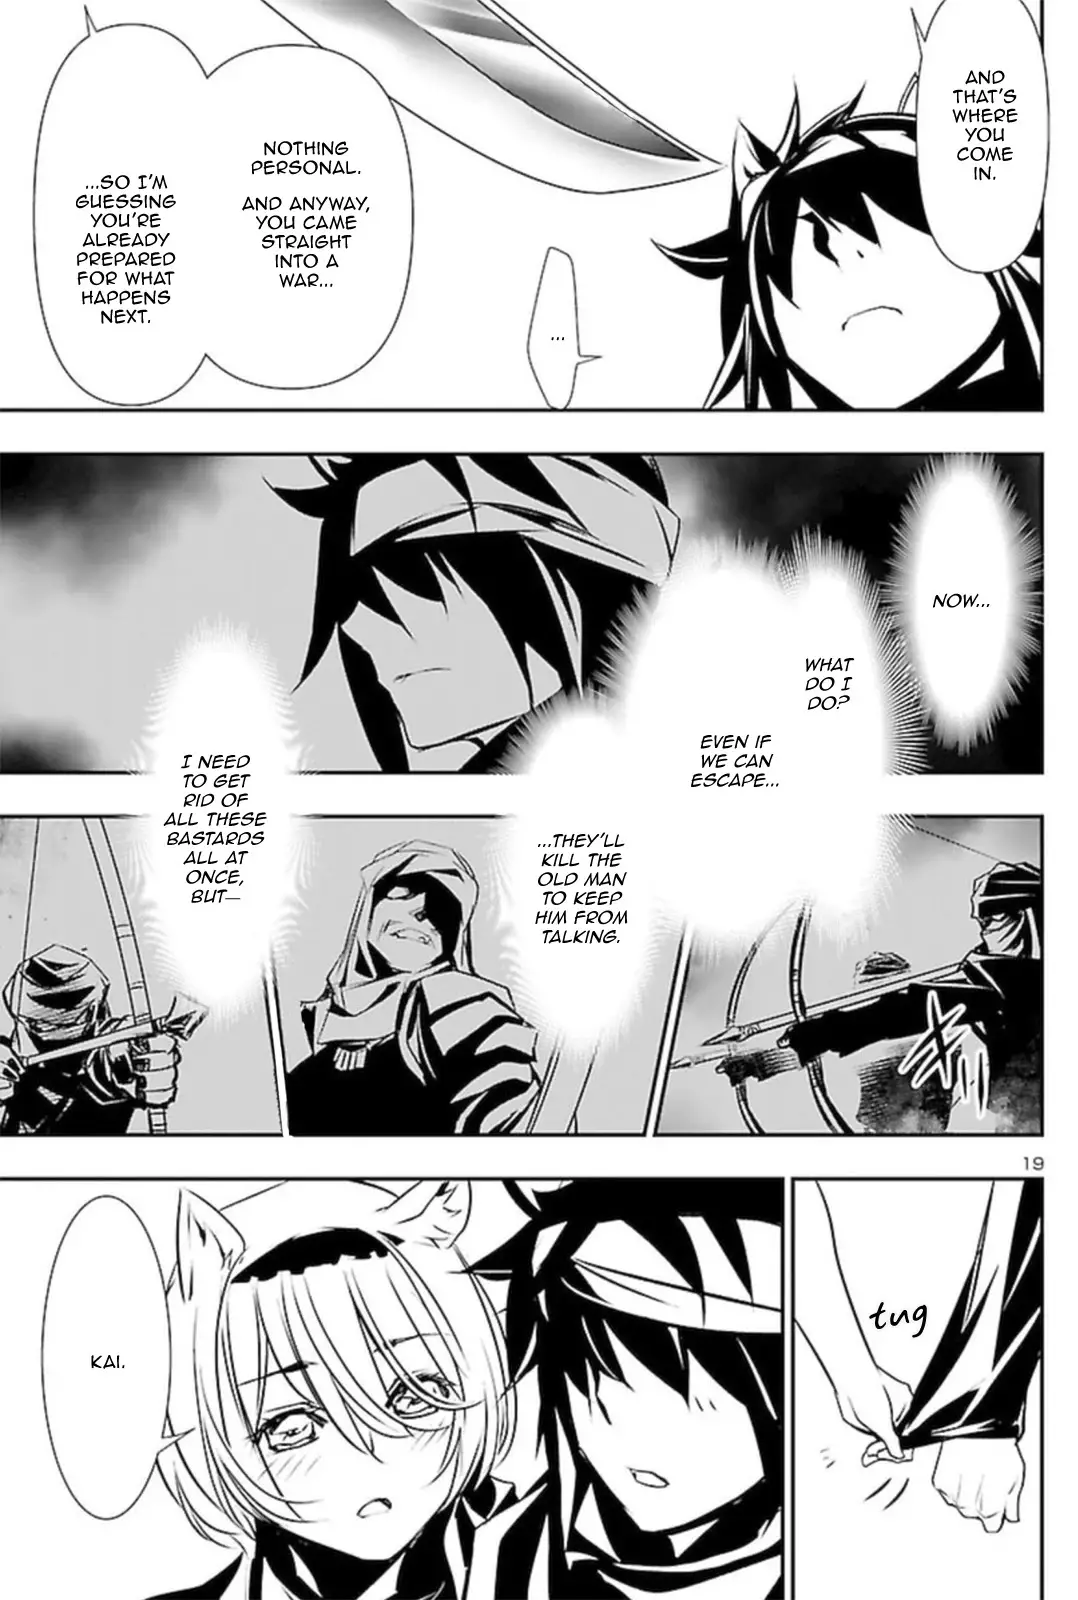 Shinju no Nectar - 52 page 19